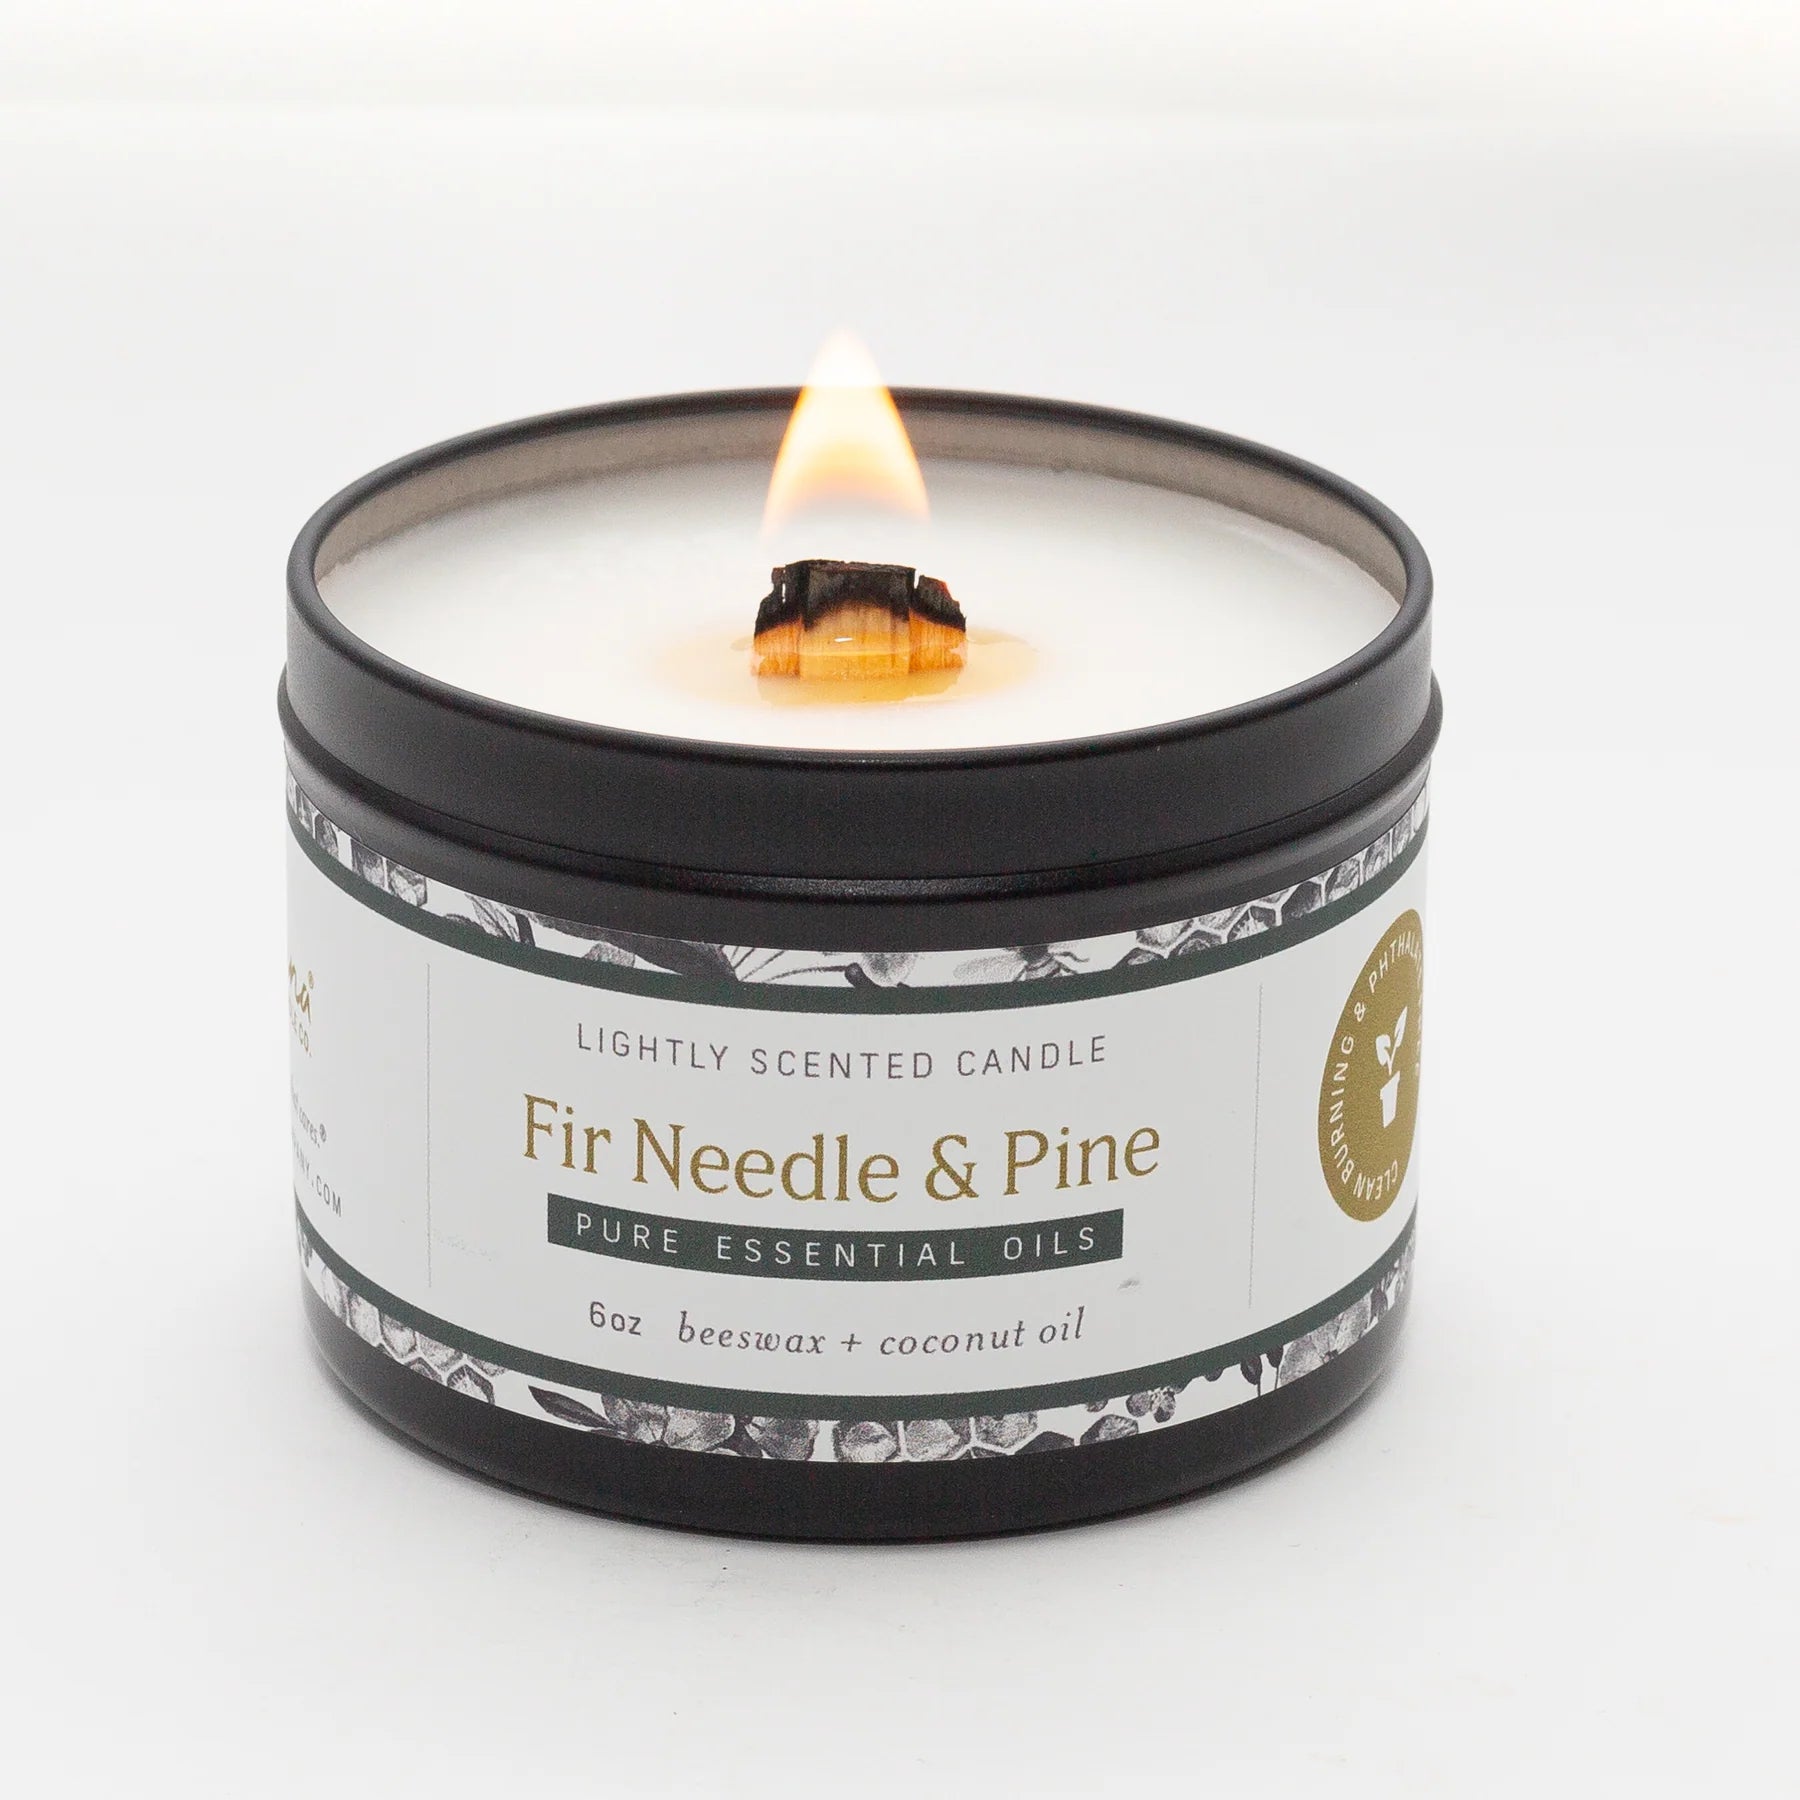 Fir Needle & Pine Essential Oil Wax Melts